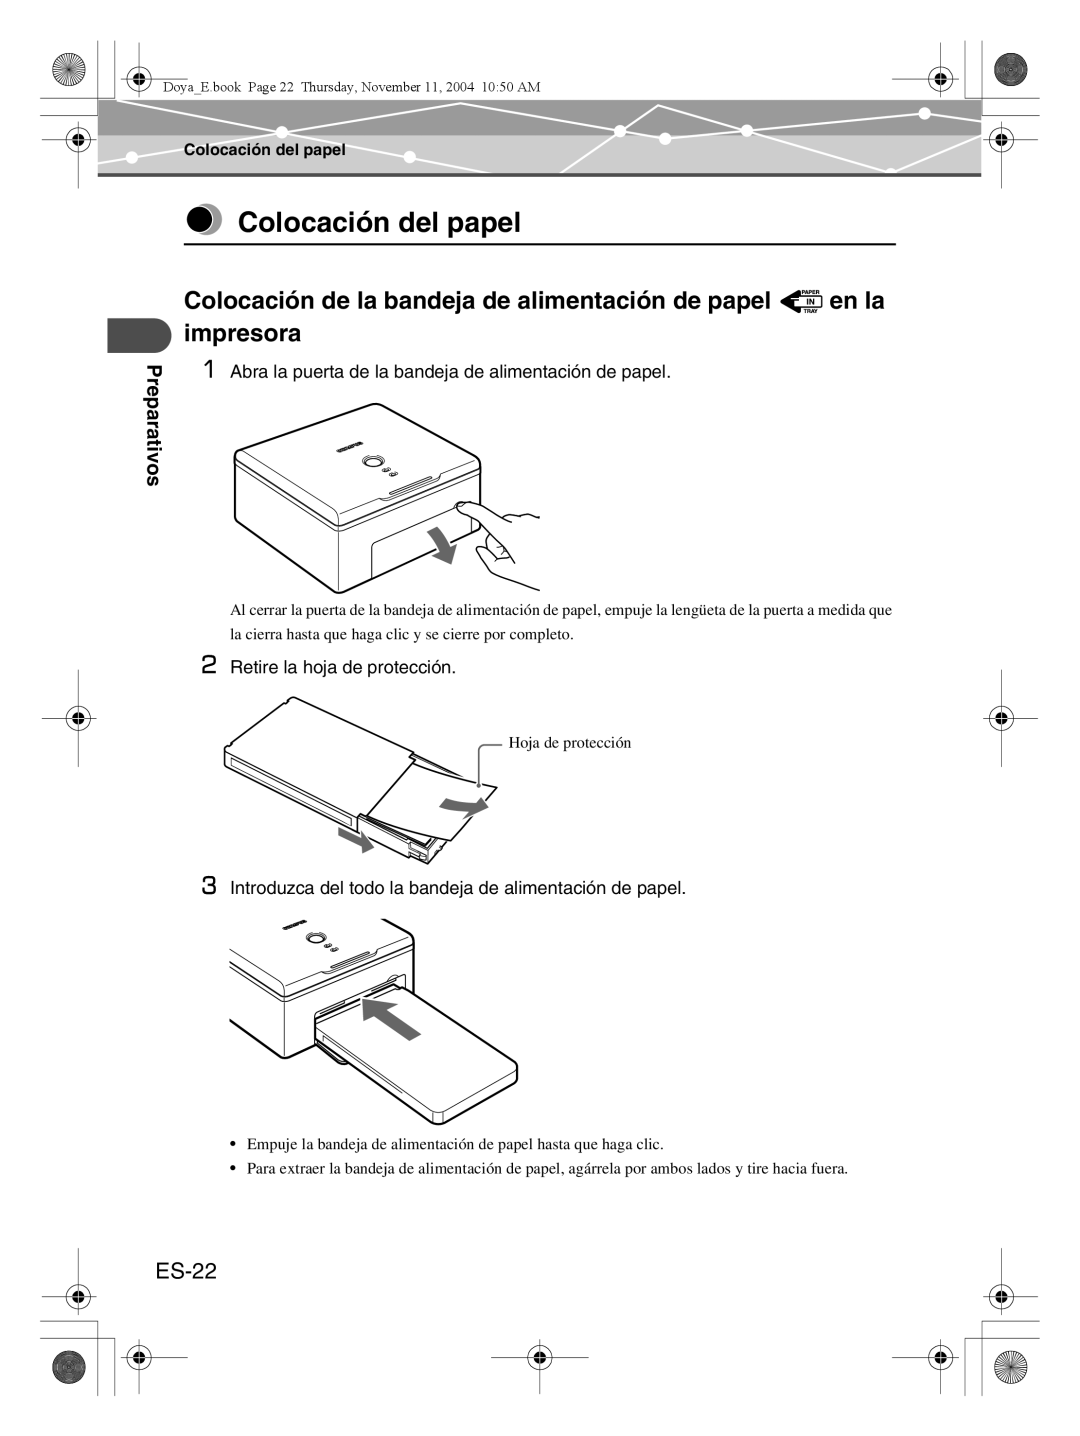 Olympus P-S100 user manual Colocación del papel, Colocación de la bandeja de alimentación de papel, en la, impresora, ES-22 